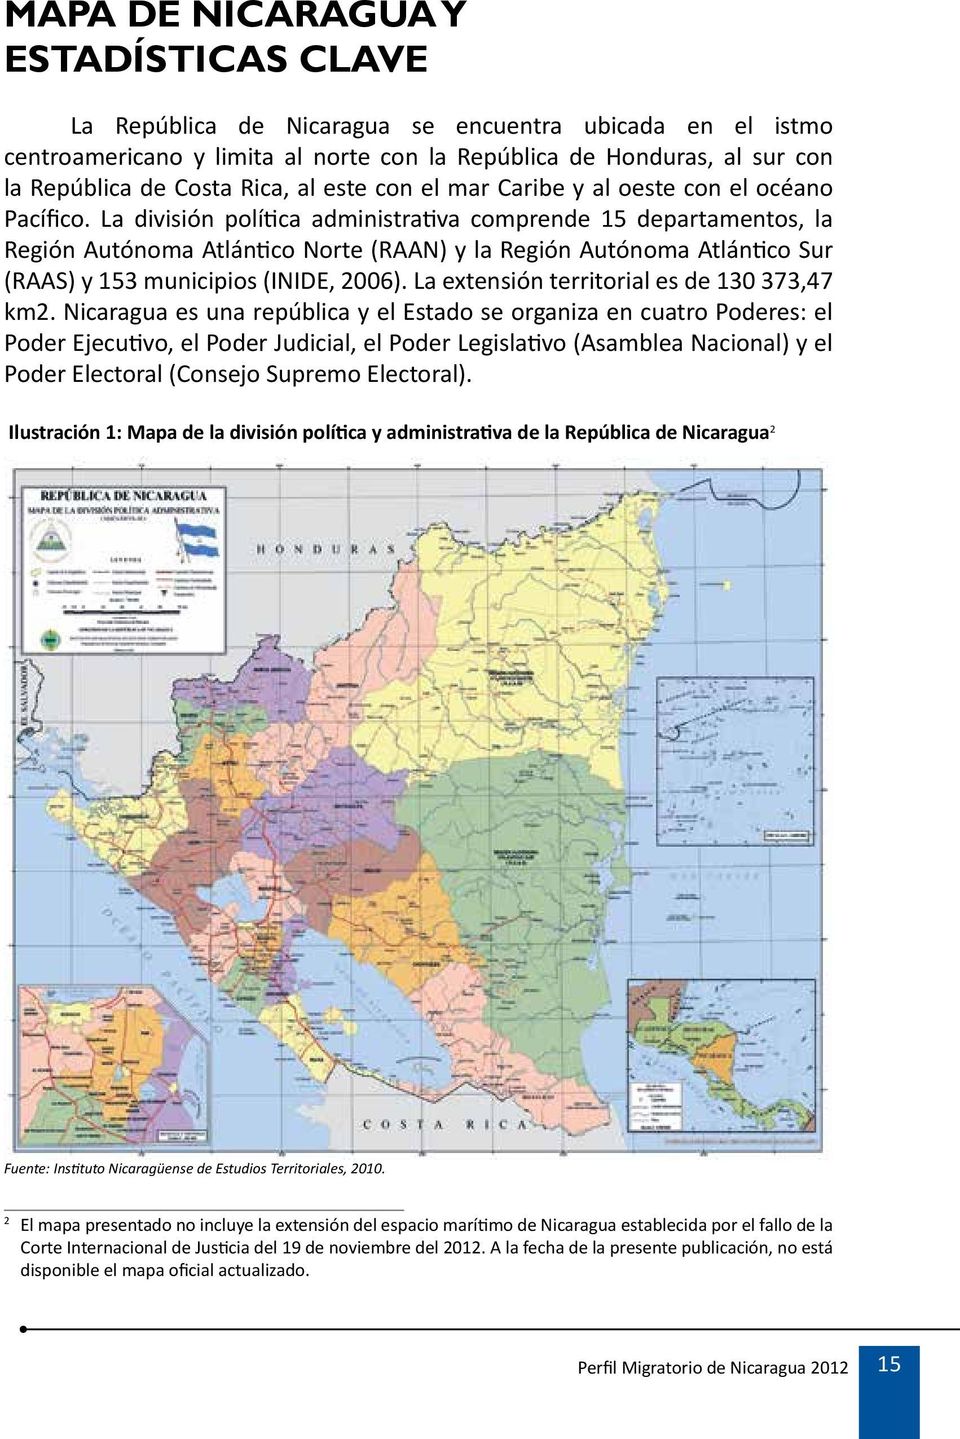 La división política administrativa comprende 15 departamentos, la Región Autónoma Atlántico Norte (RAAN) y la Región Autónoma Atlántico Sur (RAAS) y 153 municipios (INIDE, 2006).